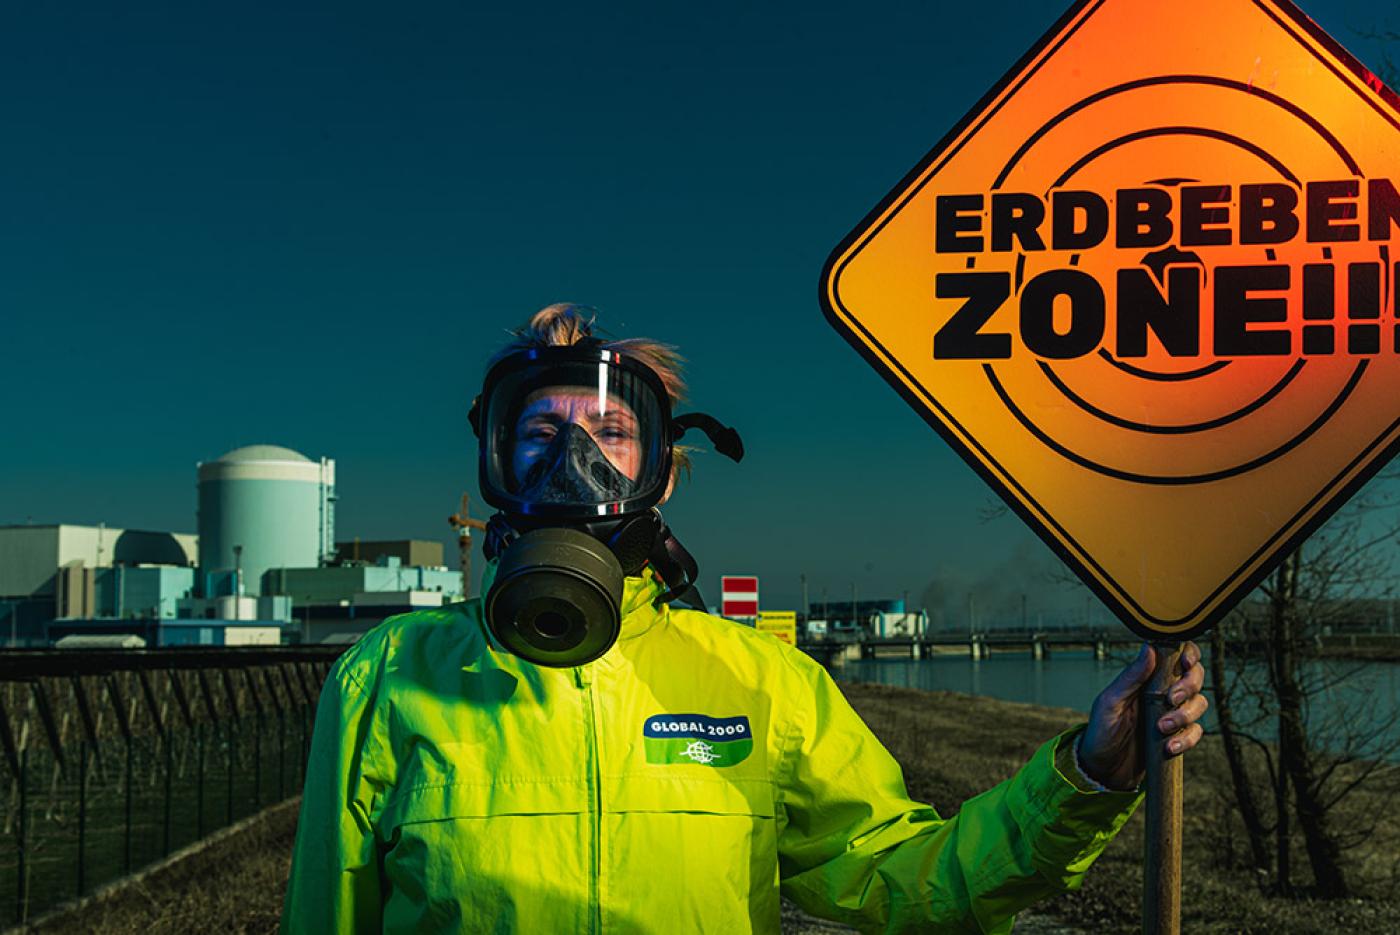 Frau mit einer Schutzmaske und einer GLOBAL 2000 Jacke steht vor dem AKW und hält ein Schild mit der Aufschrift "Erdbeben Zone!!!"